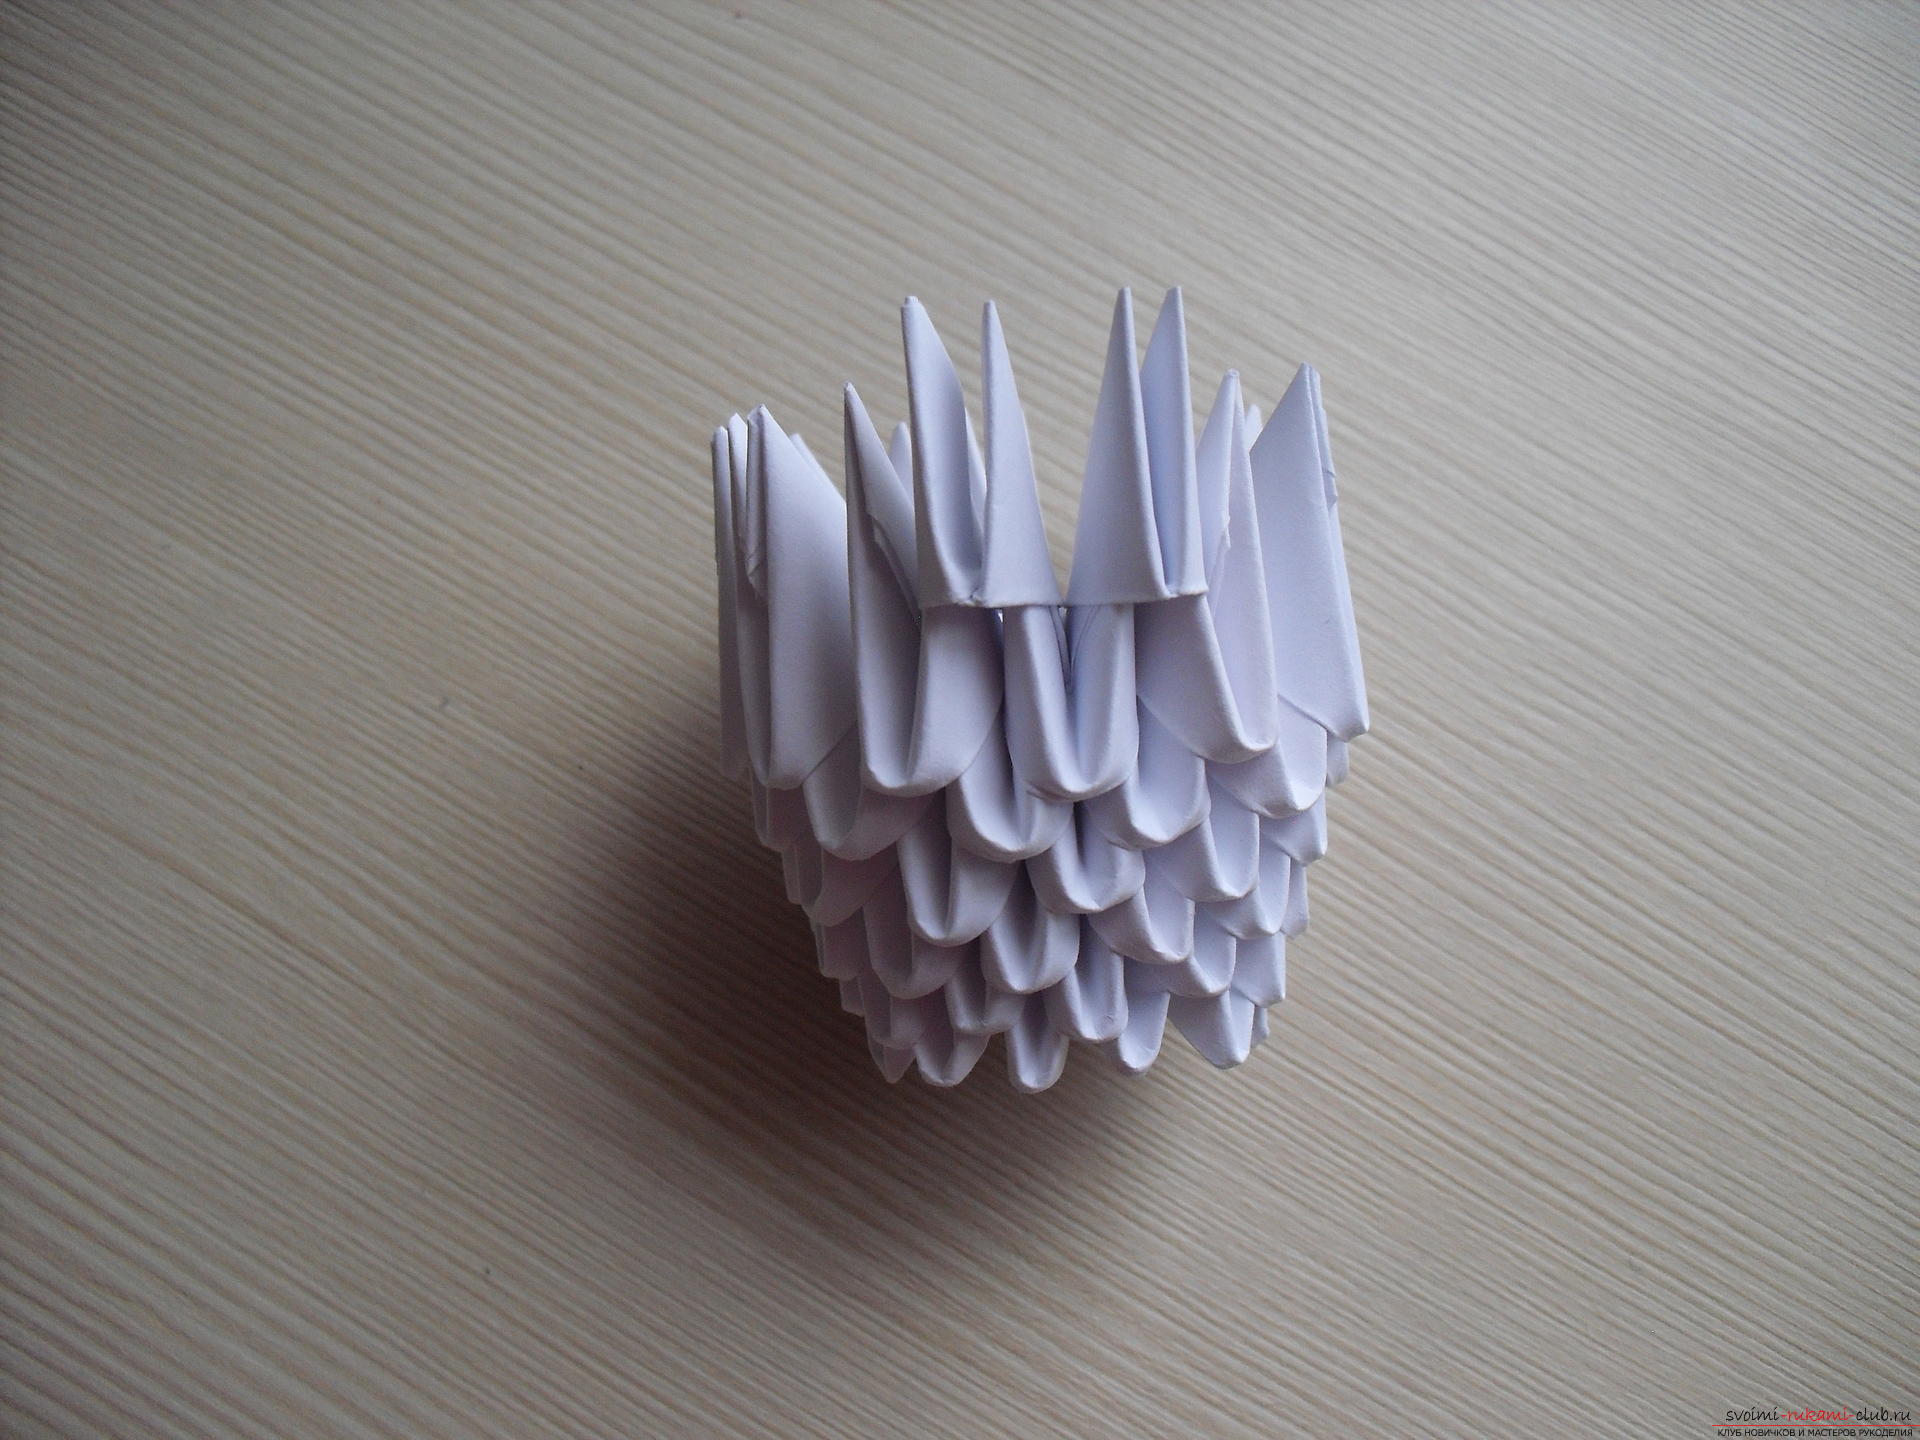 Этот мастер-класс научит как сделать модульное оригами - гриб мухомор.. Фото №14